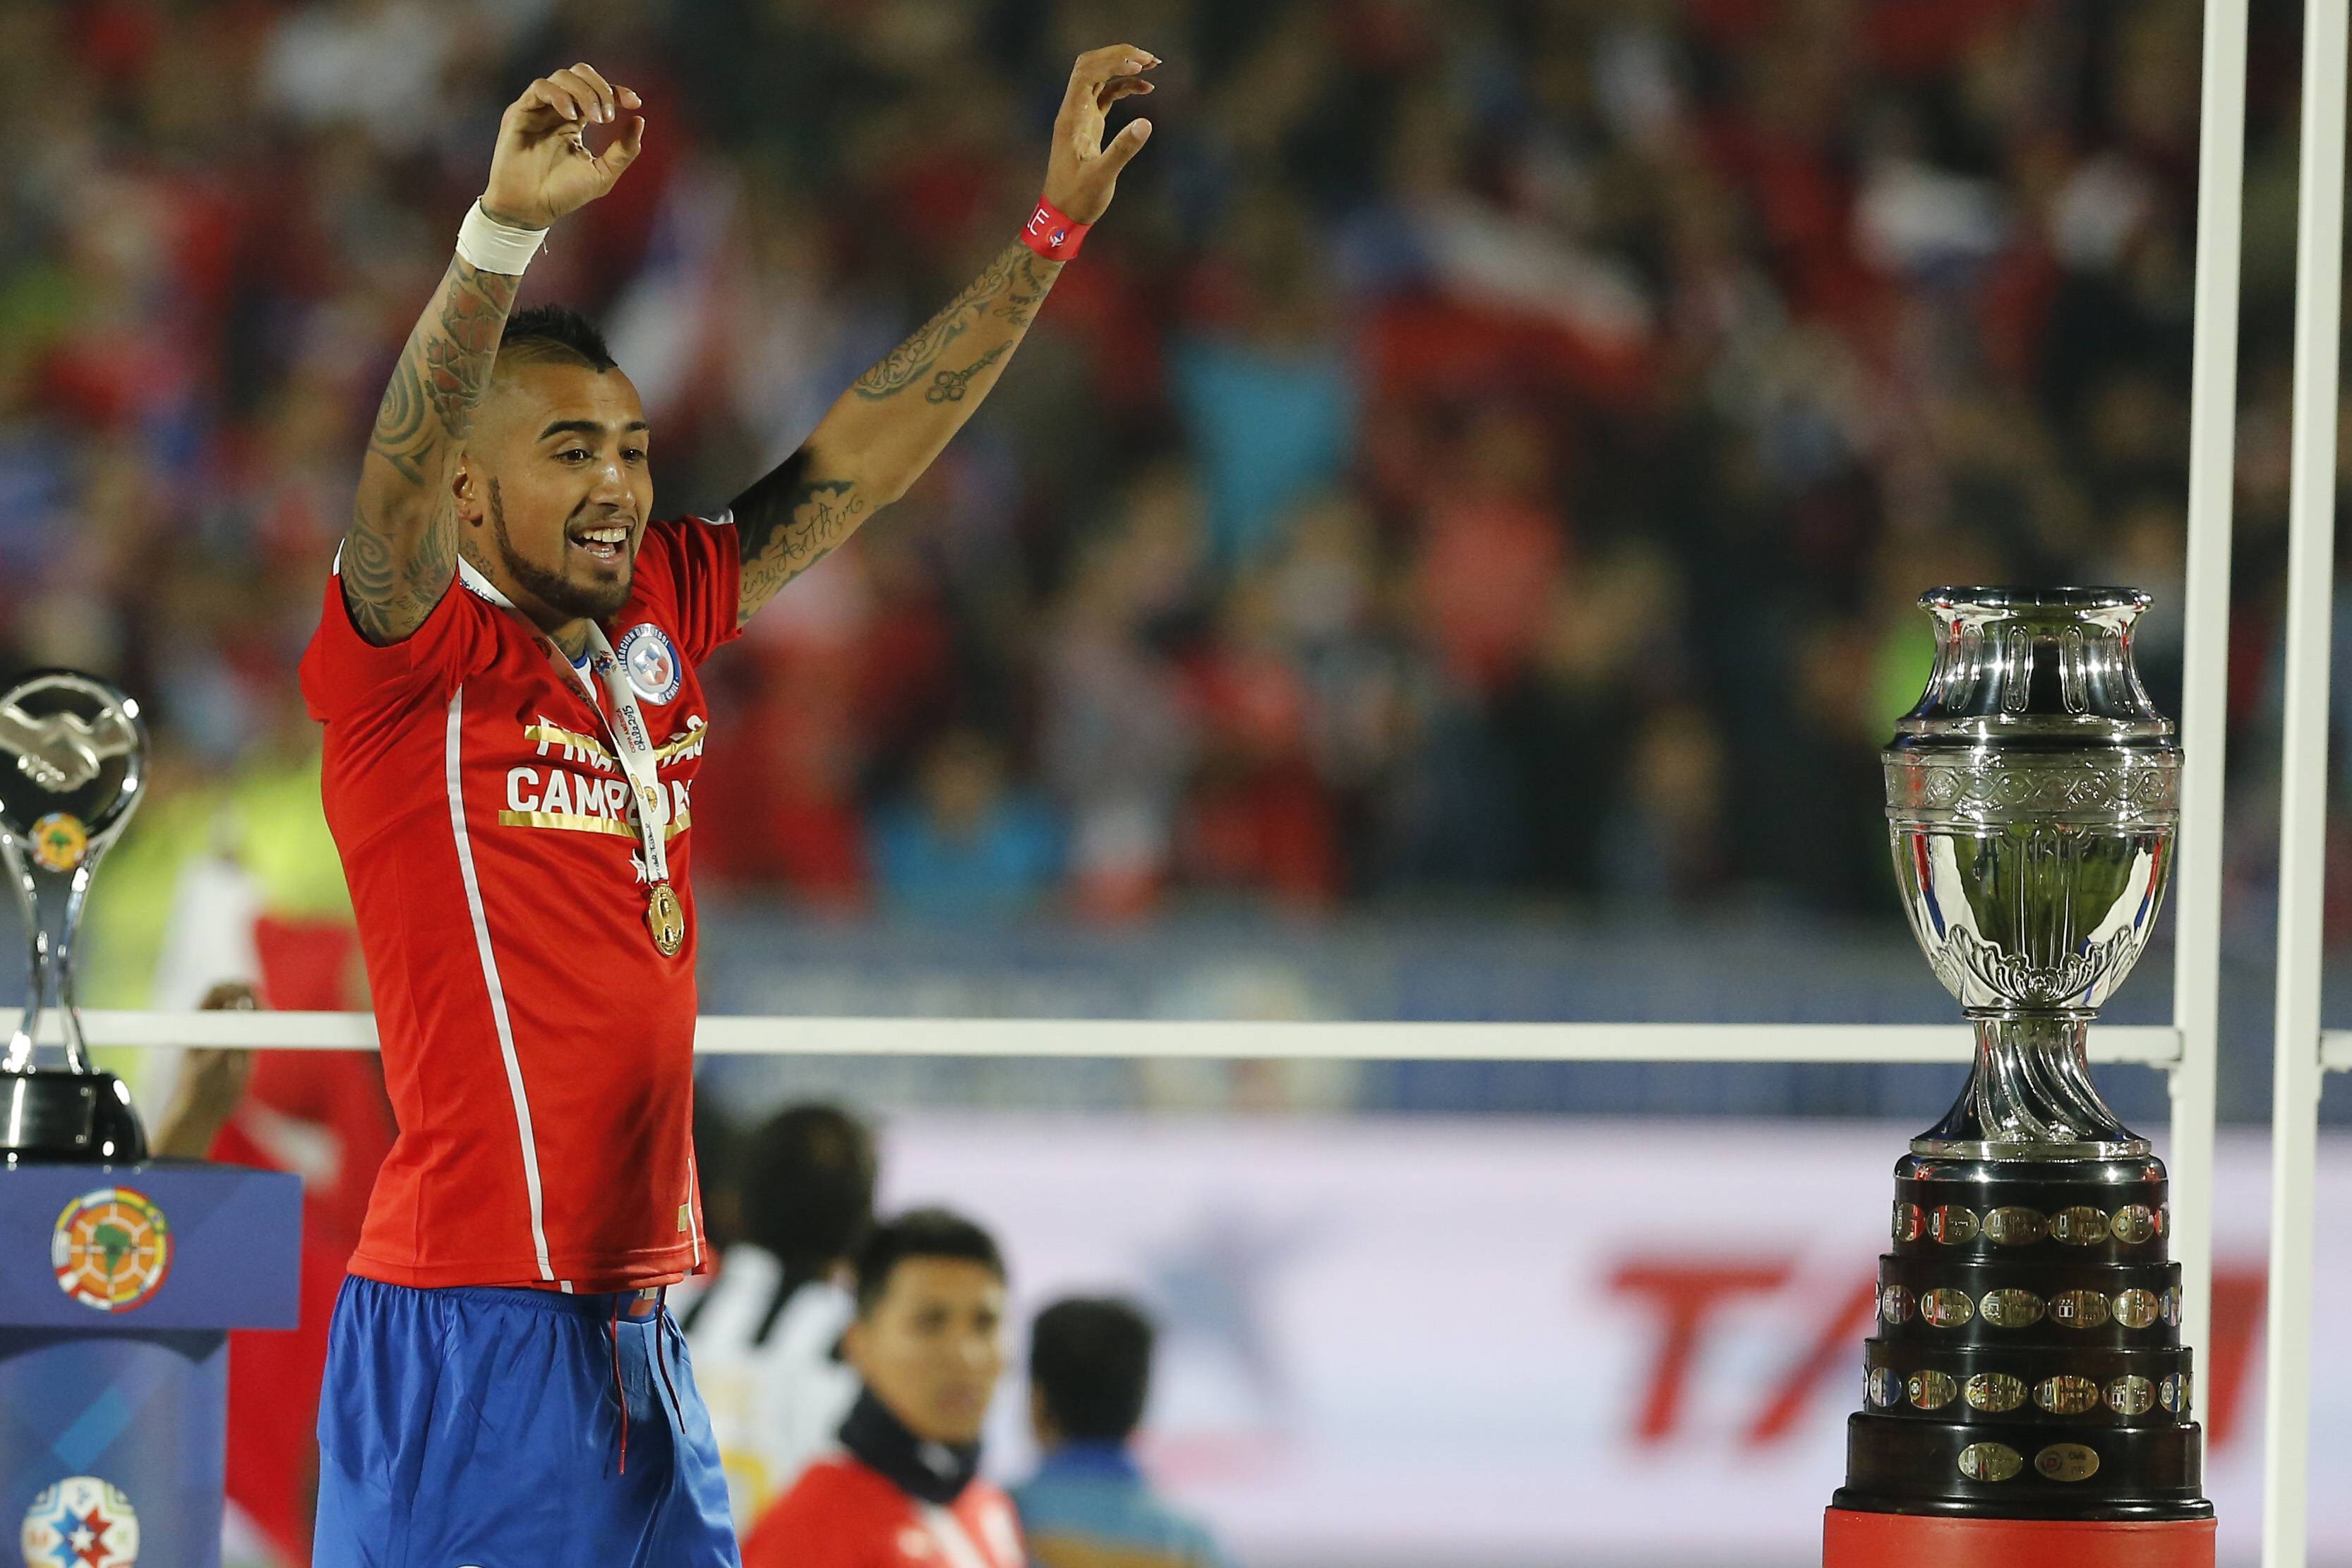 Football Chile V Argentina Copa America 2015 Chile S Player Arturo Vidal Celebrates His Victory